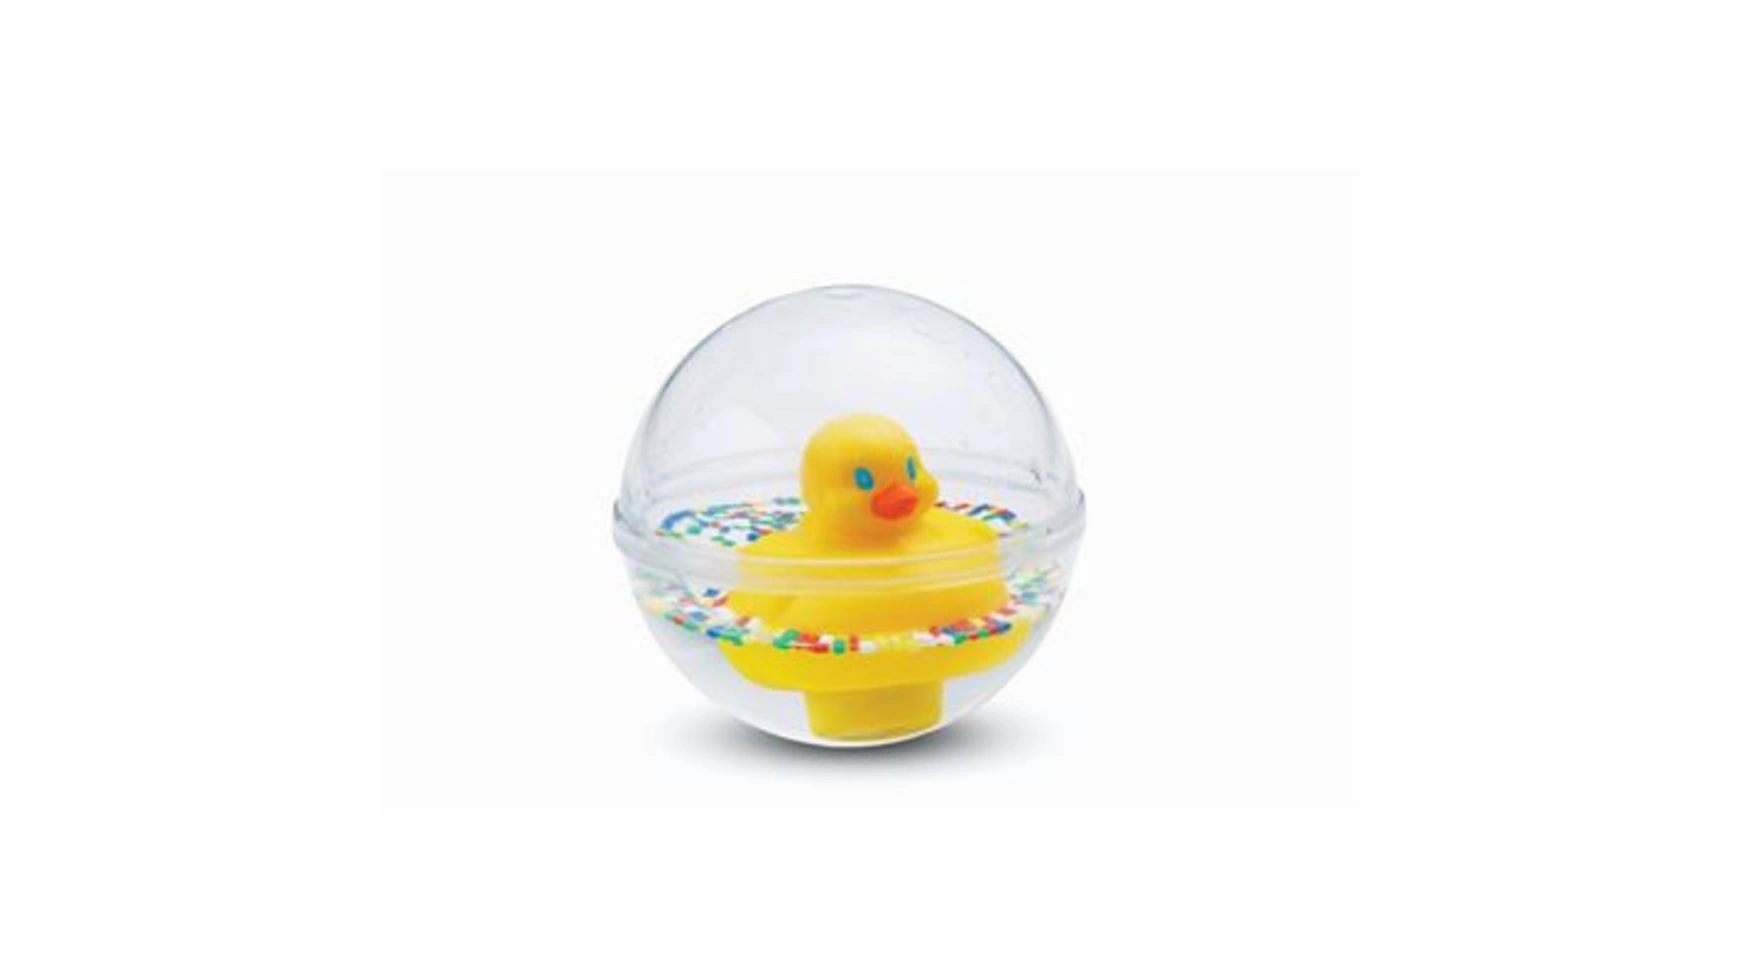 Fisher Price Утиный мячик, детская игрушка, игрушка для ванны, детский мячик светодиодсветодиодный плавающая утка детская игрушка для ванной комнаты интерактивная игрушка для водных игр бассейна пляжа светящаяс